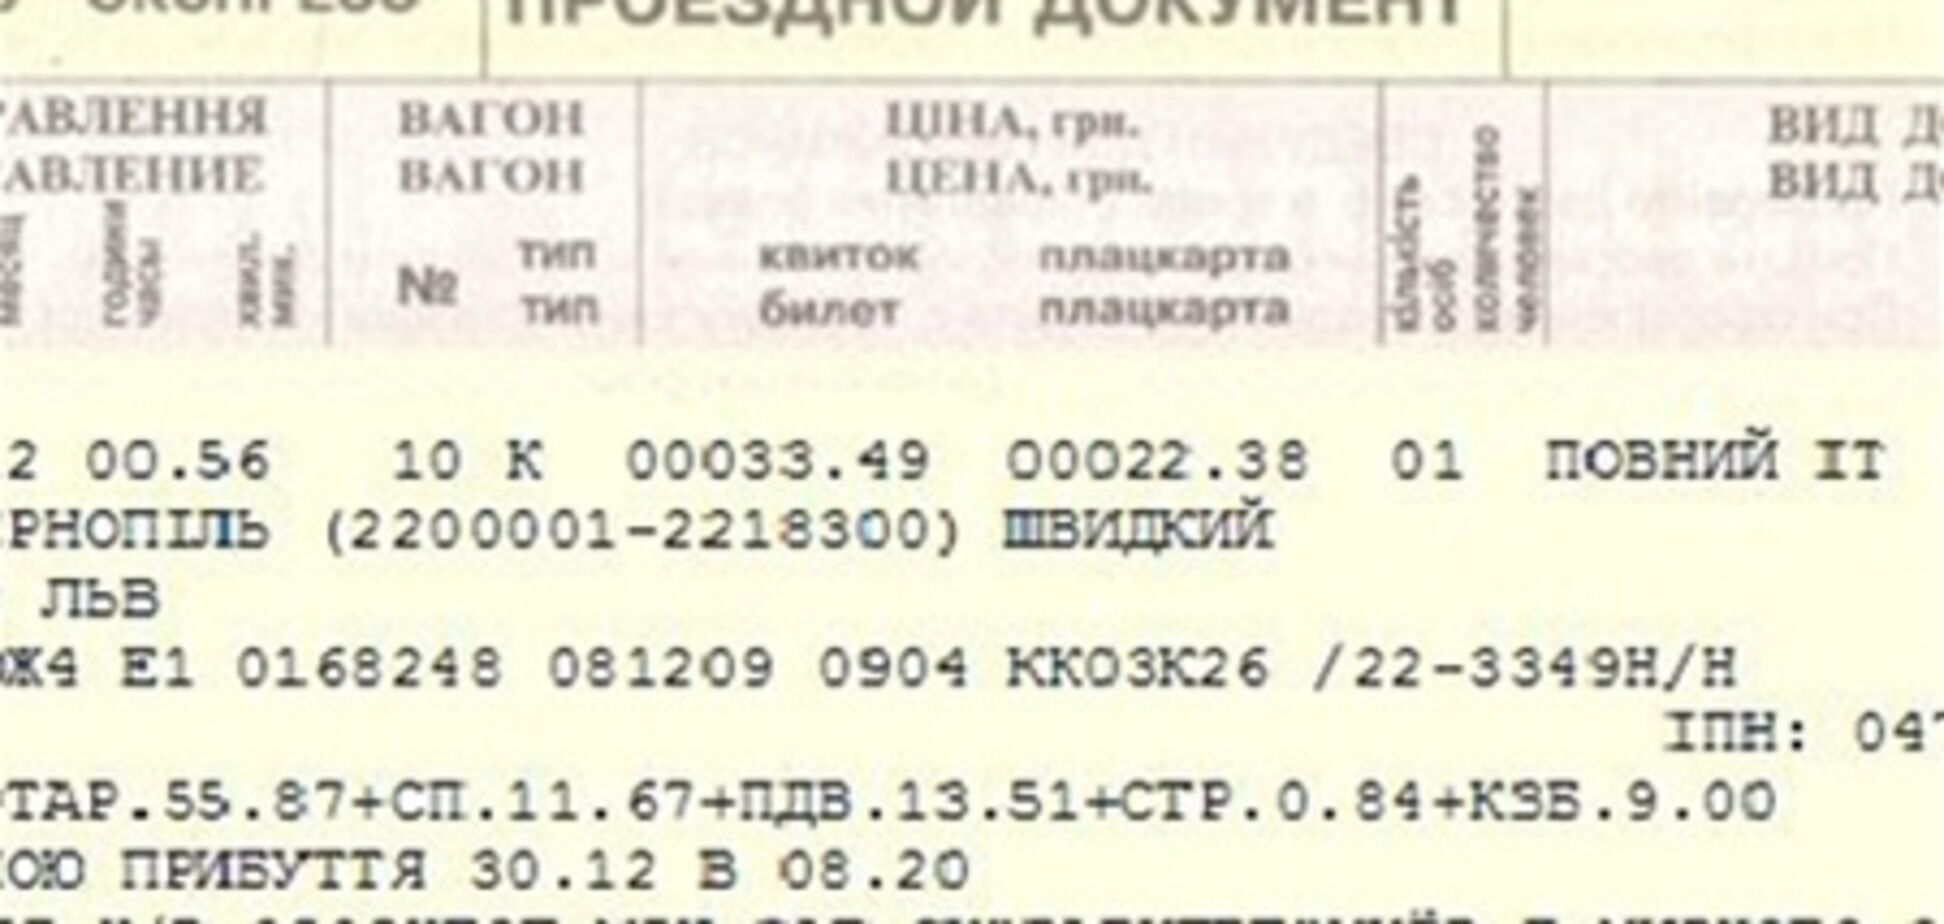 О начале продаж именных билетов Укрзализныця сообщит отдельно